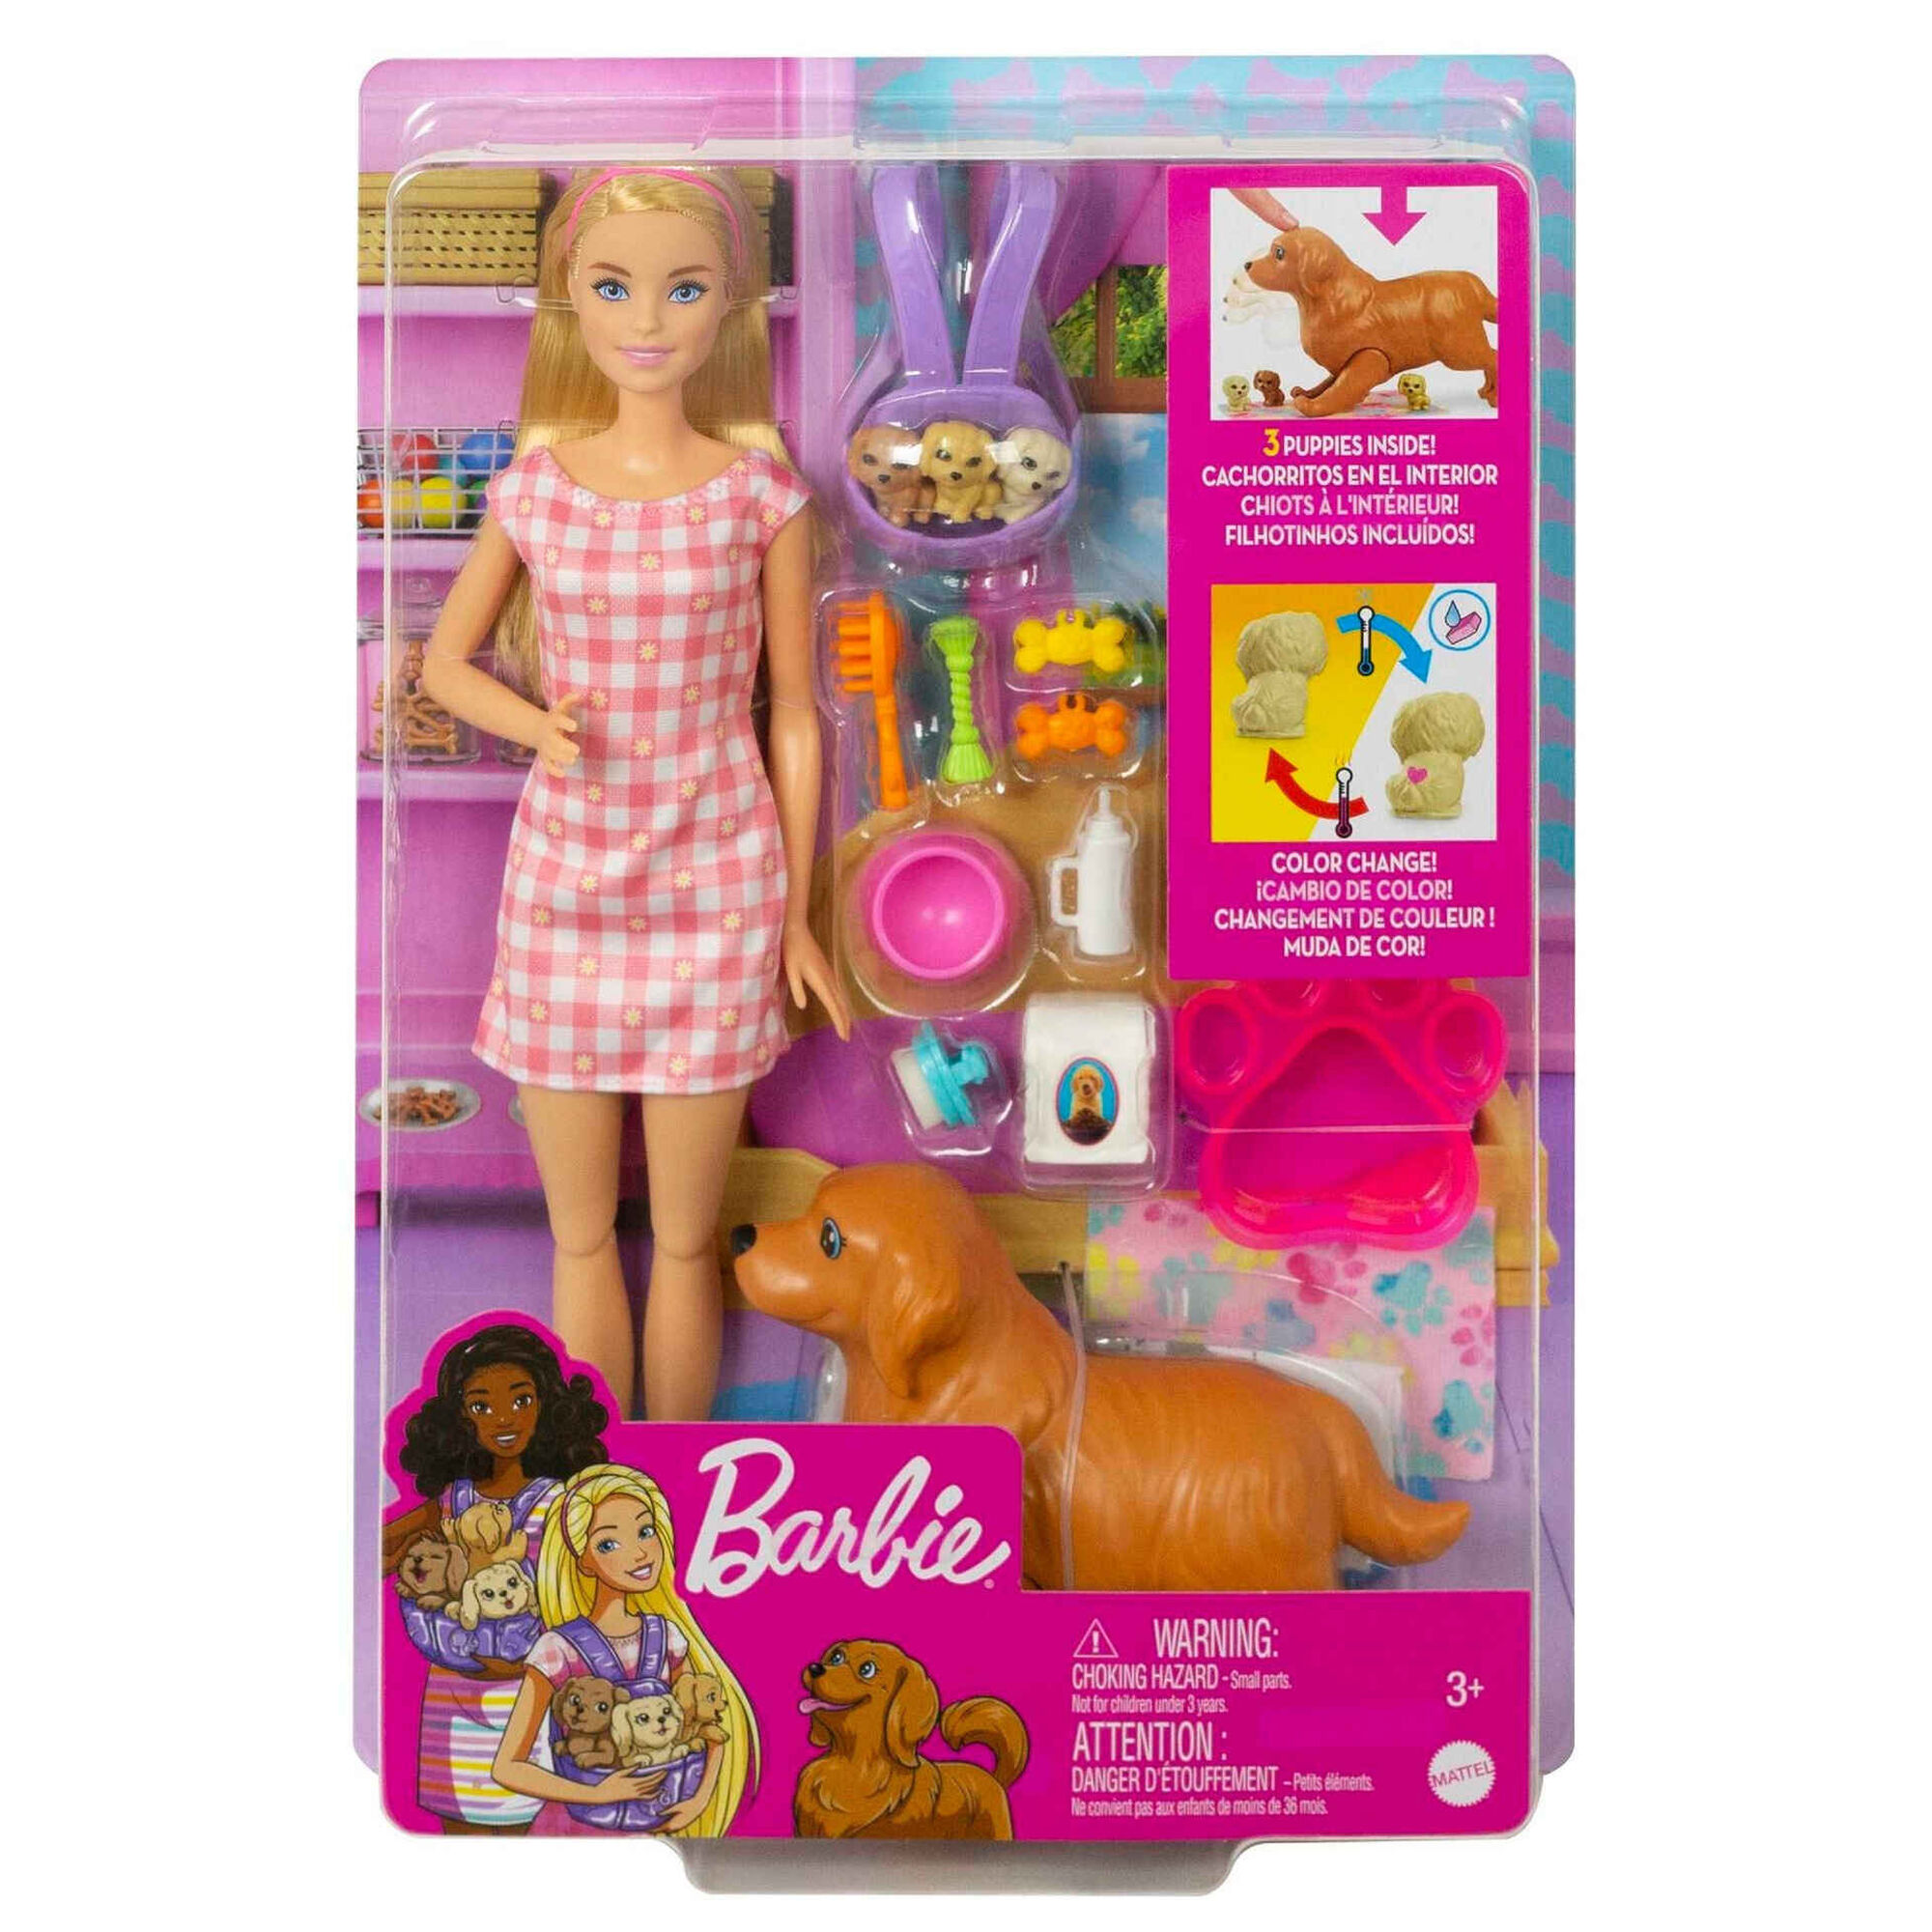 DIY Miniaturas de Bonecas: Barbie Grávida, Bebê Recém-Nascido